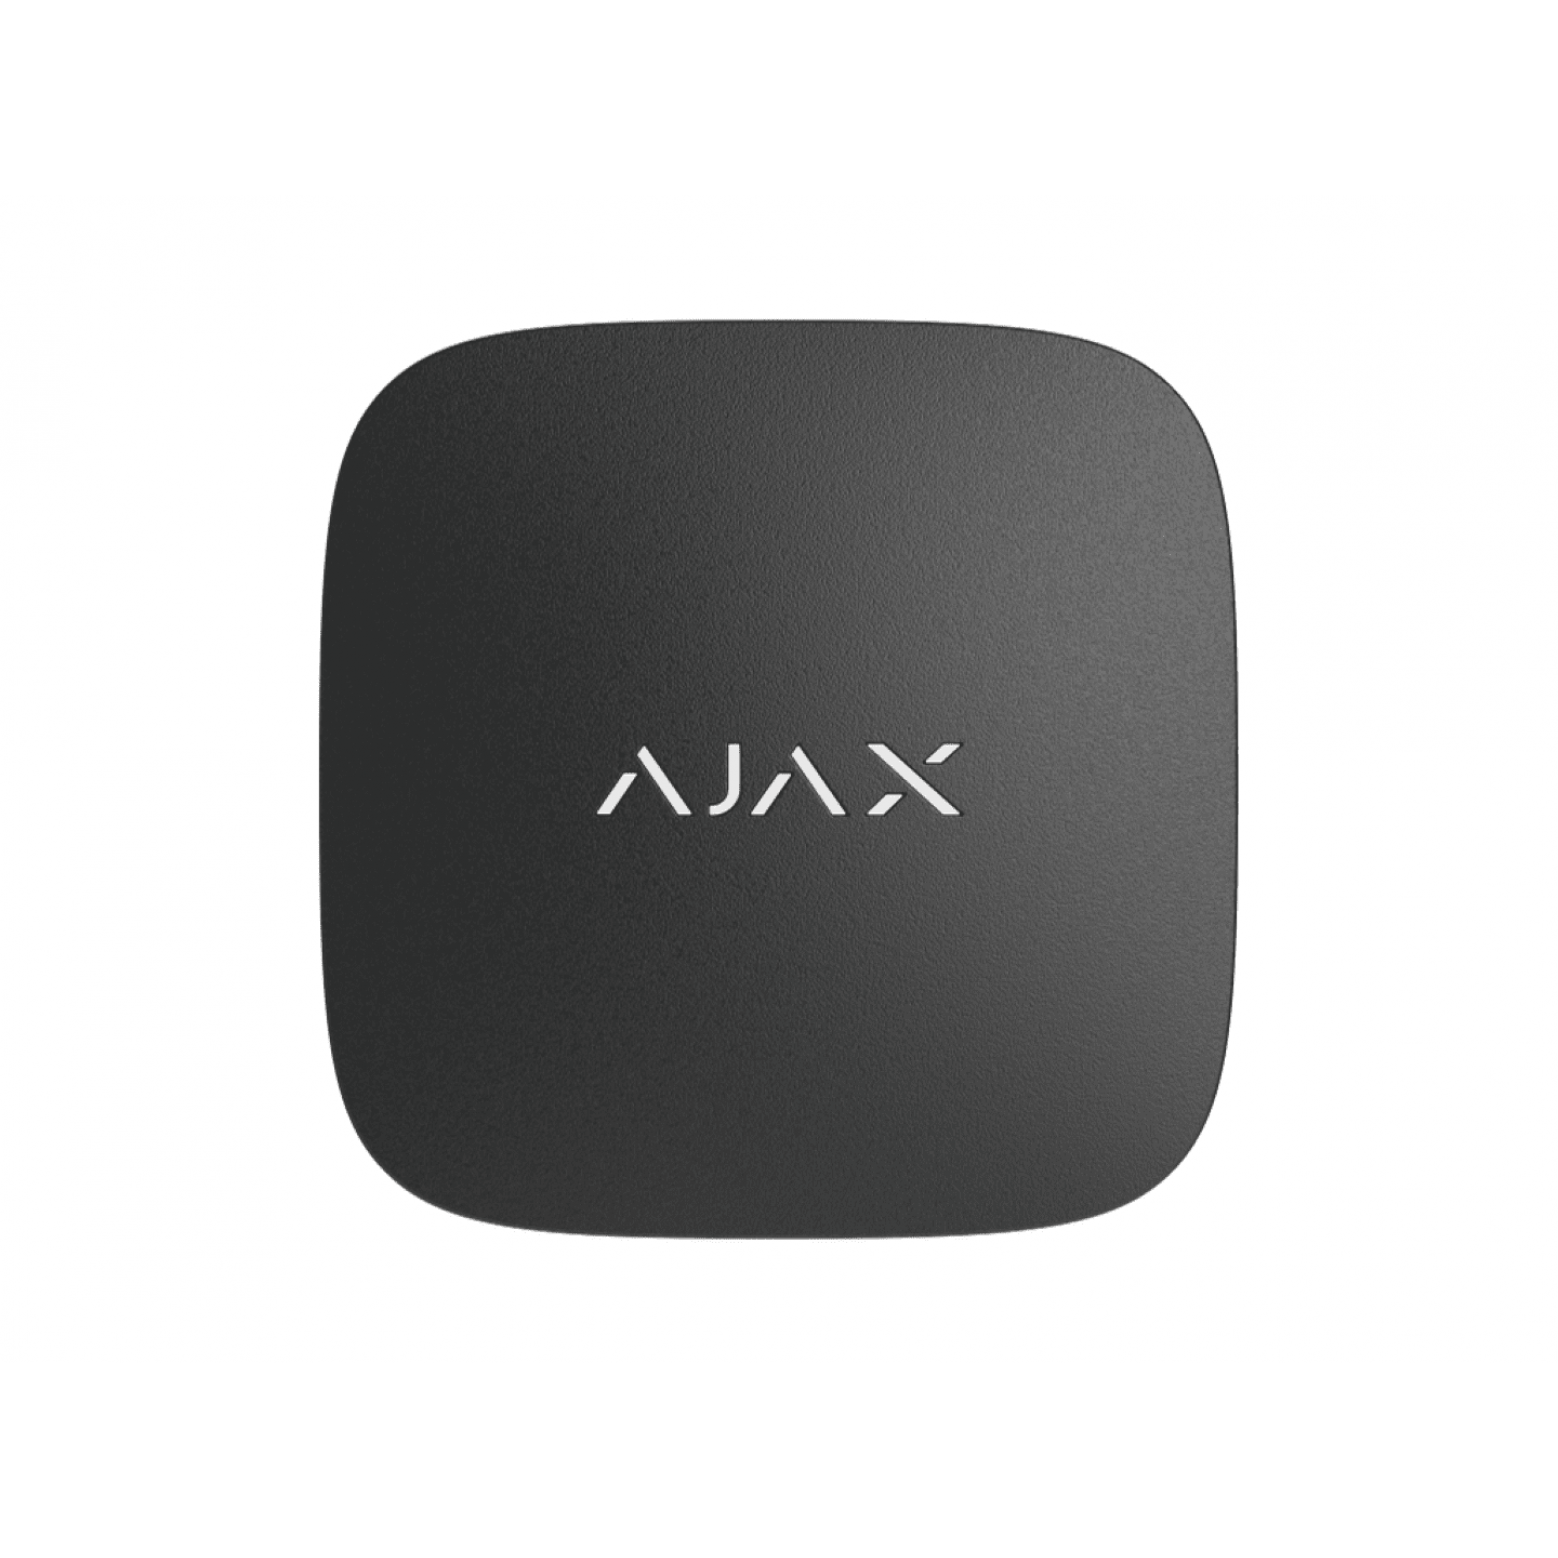 AJAX trådlös smart luftkvalitetsdetektor